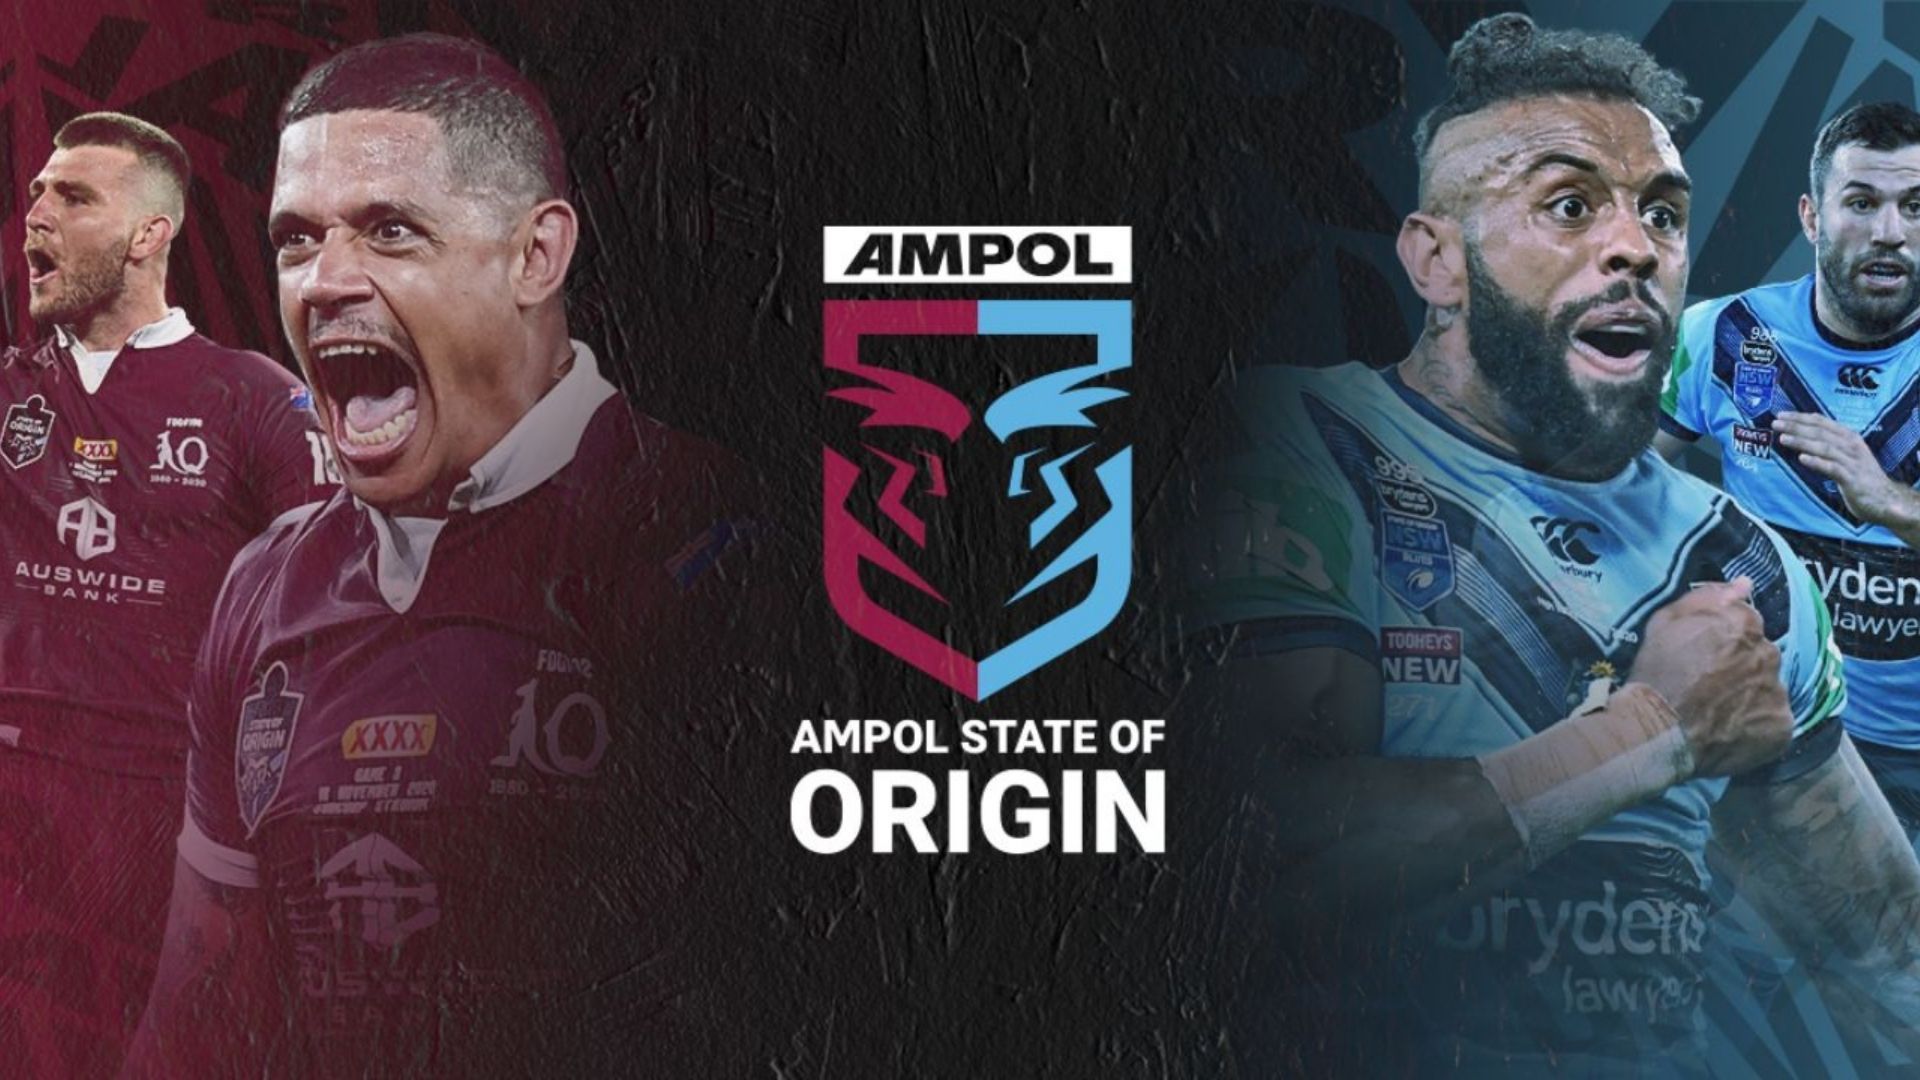 Ampol State of Origin Game 2 tại Gabba Central Apartments sẽ là nơi để những fan hâm mộ bóng đá rugby cảm nhận sự hồi hộp và kịch tính của trận đấu. Hãy xem những ngôi sao sáng nhất của NSW Blues và QLD Maroons thi đấu trên sân, tạo ra những bàn thắng đẹp mắt và đầy ý nghĩa.